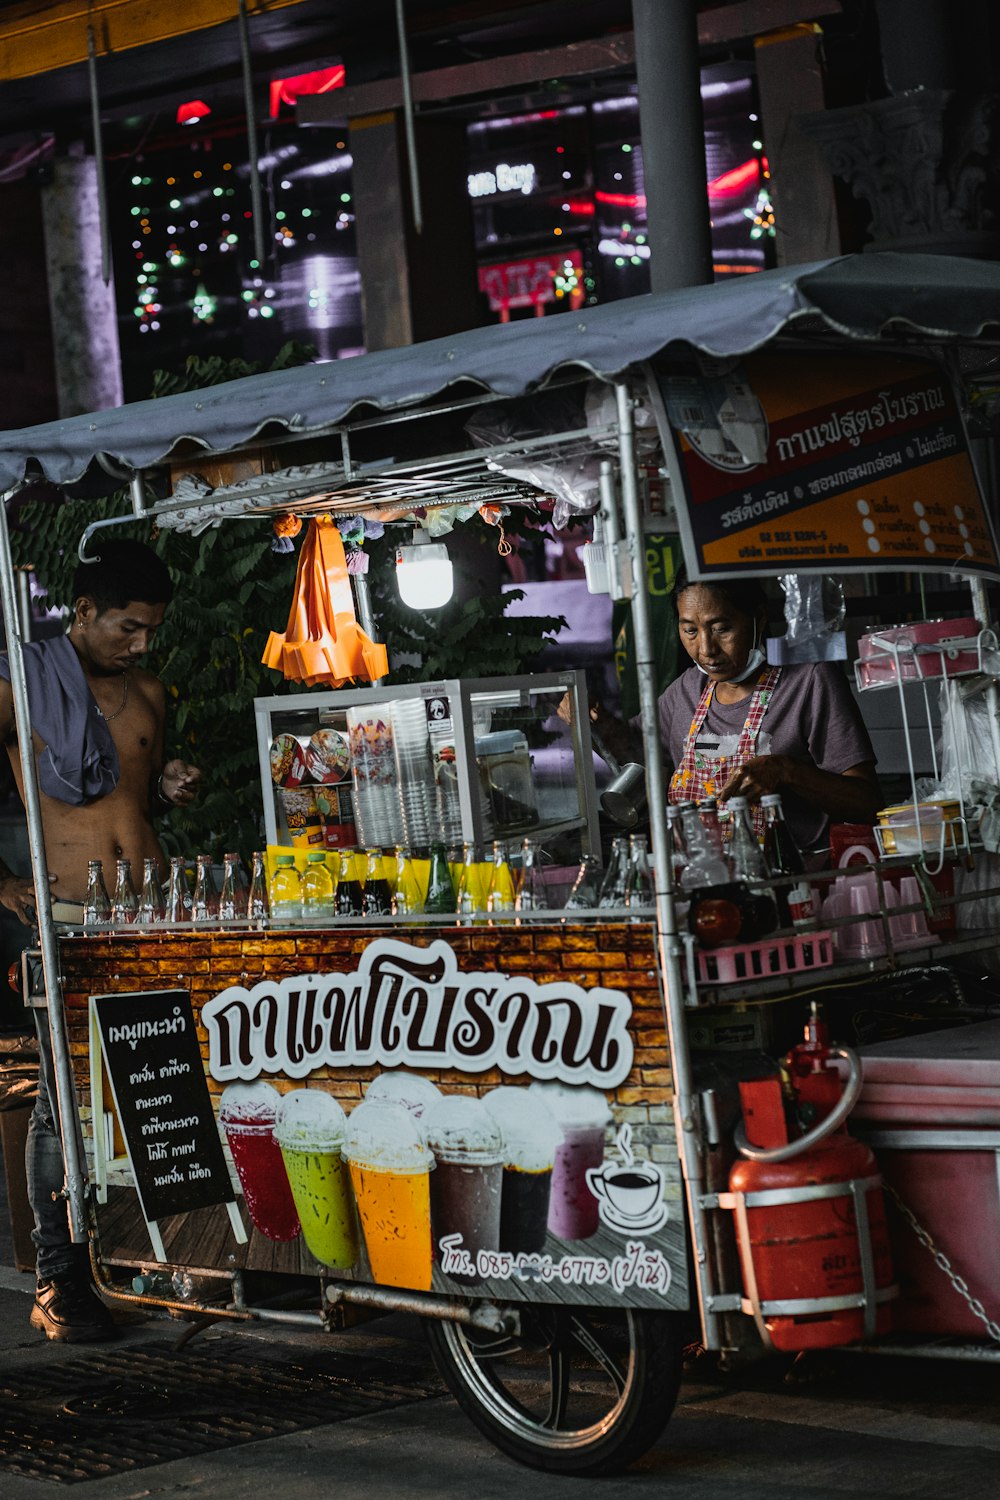 Un hombre parado detrás de un carrito de comida vendiendo bebidas